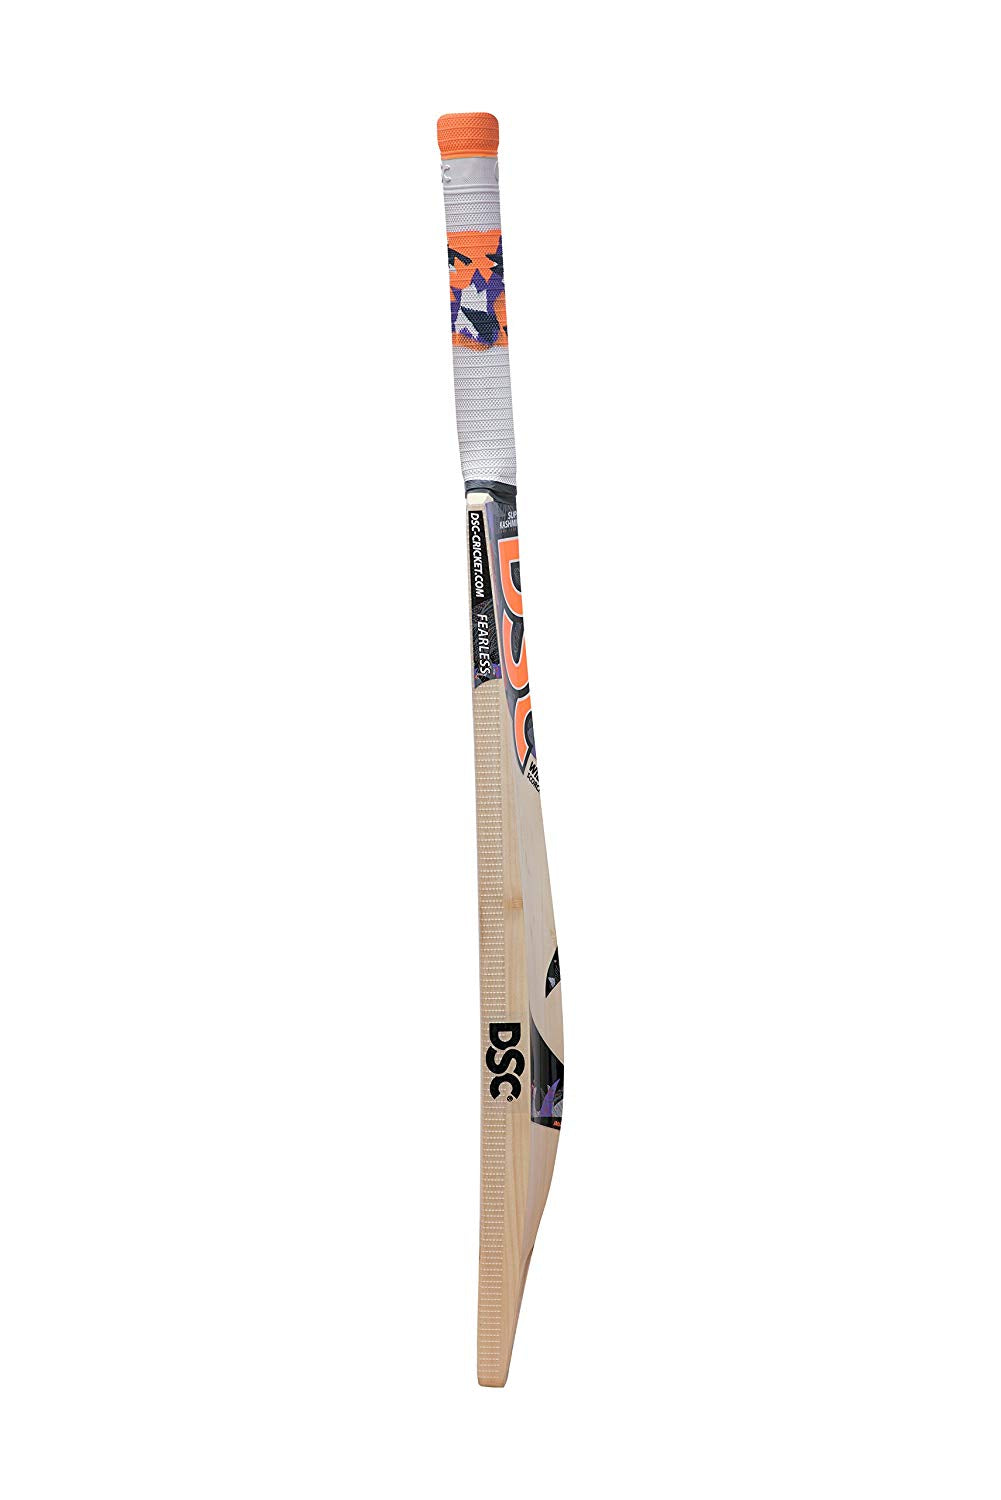 DSC Wildfire Scorcher Tennis Cricket Bat - Best Price online Prokicksports.com